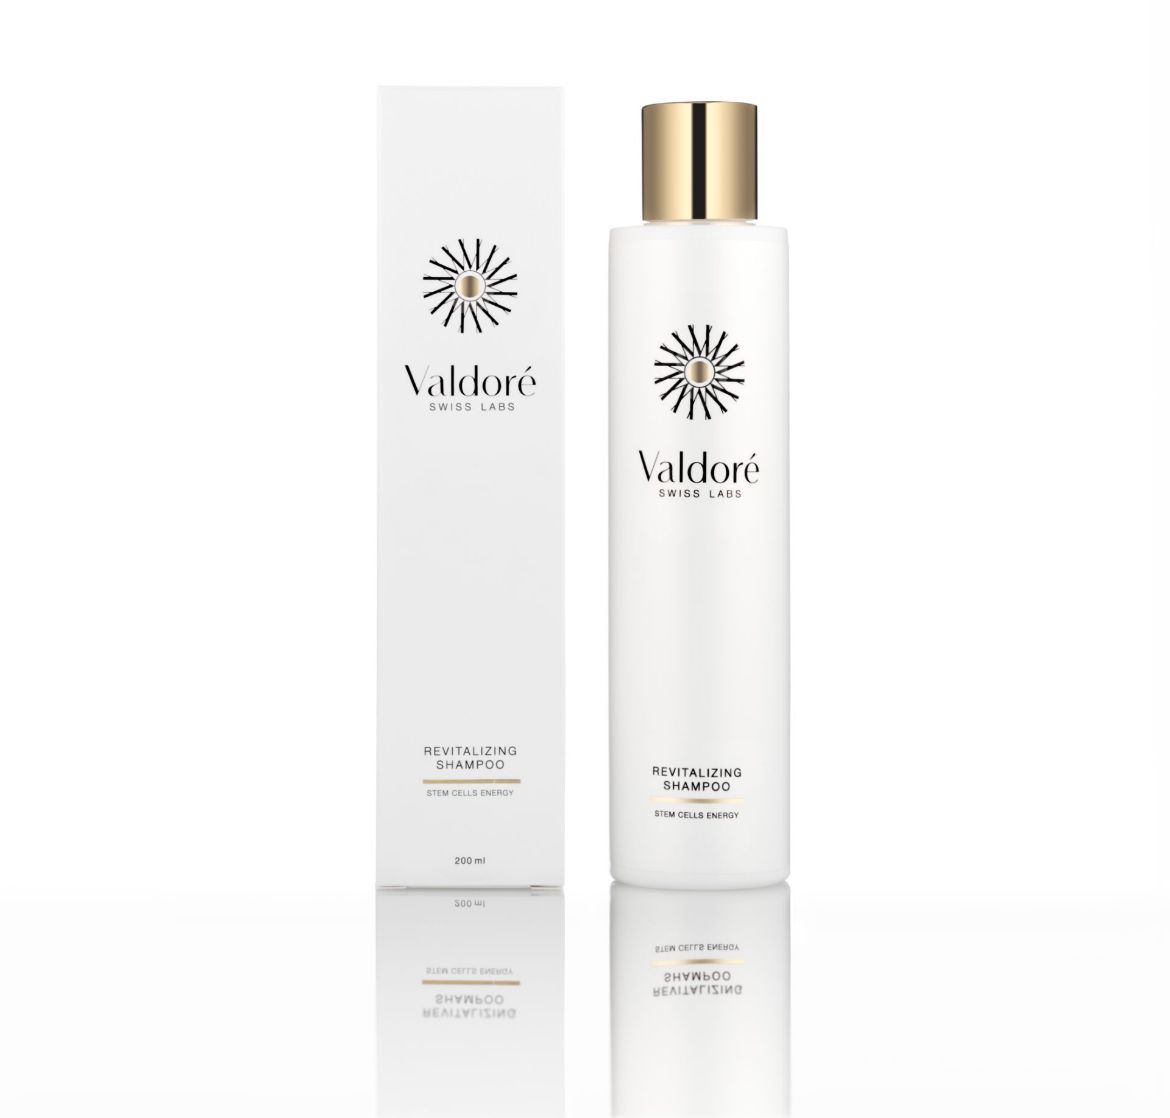 Bild von Valdoré Revitalizing Shampoo (200ml)